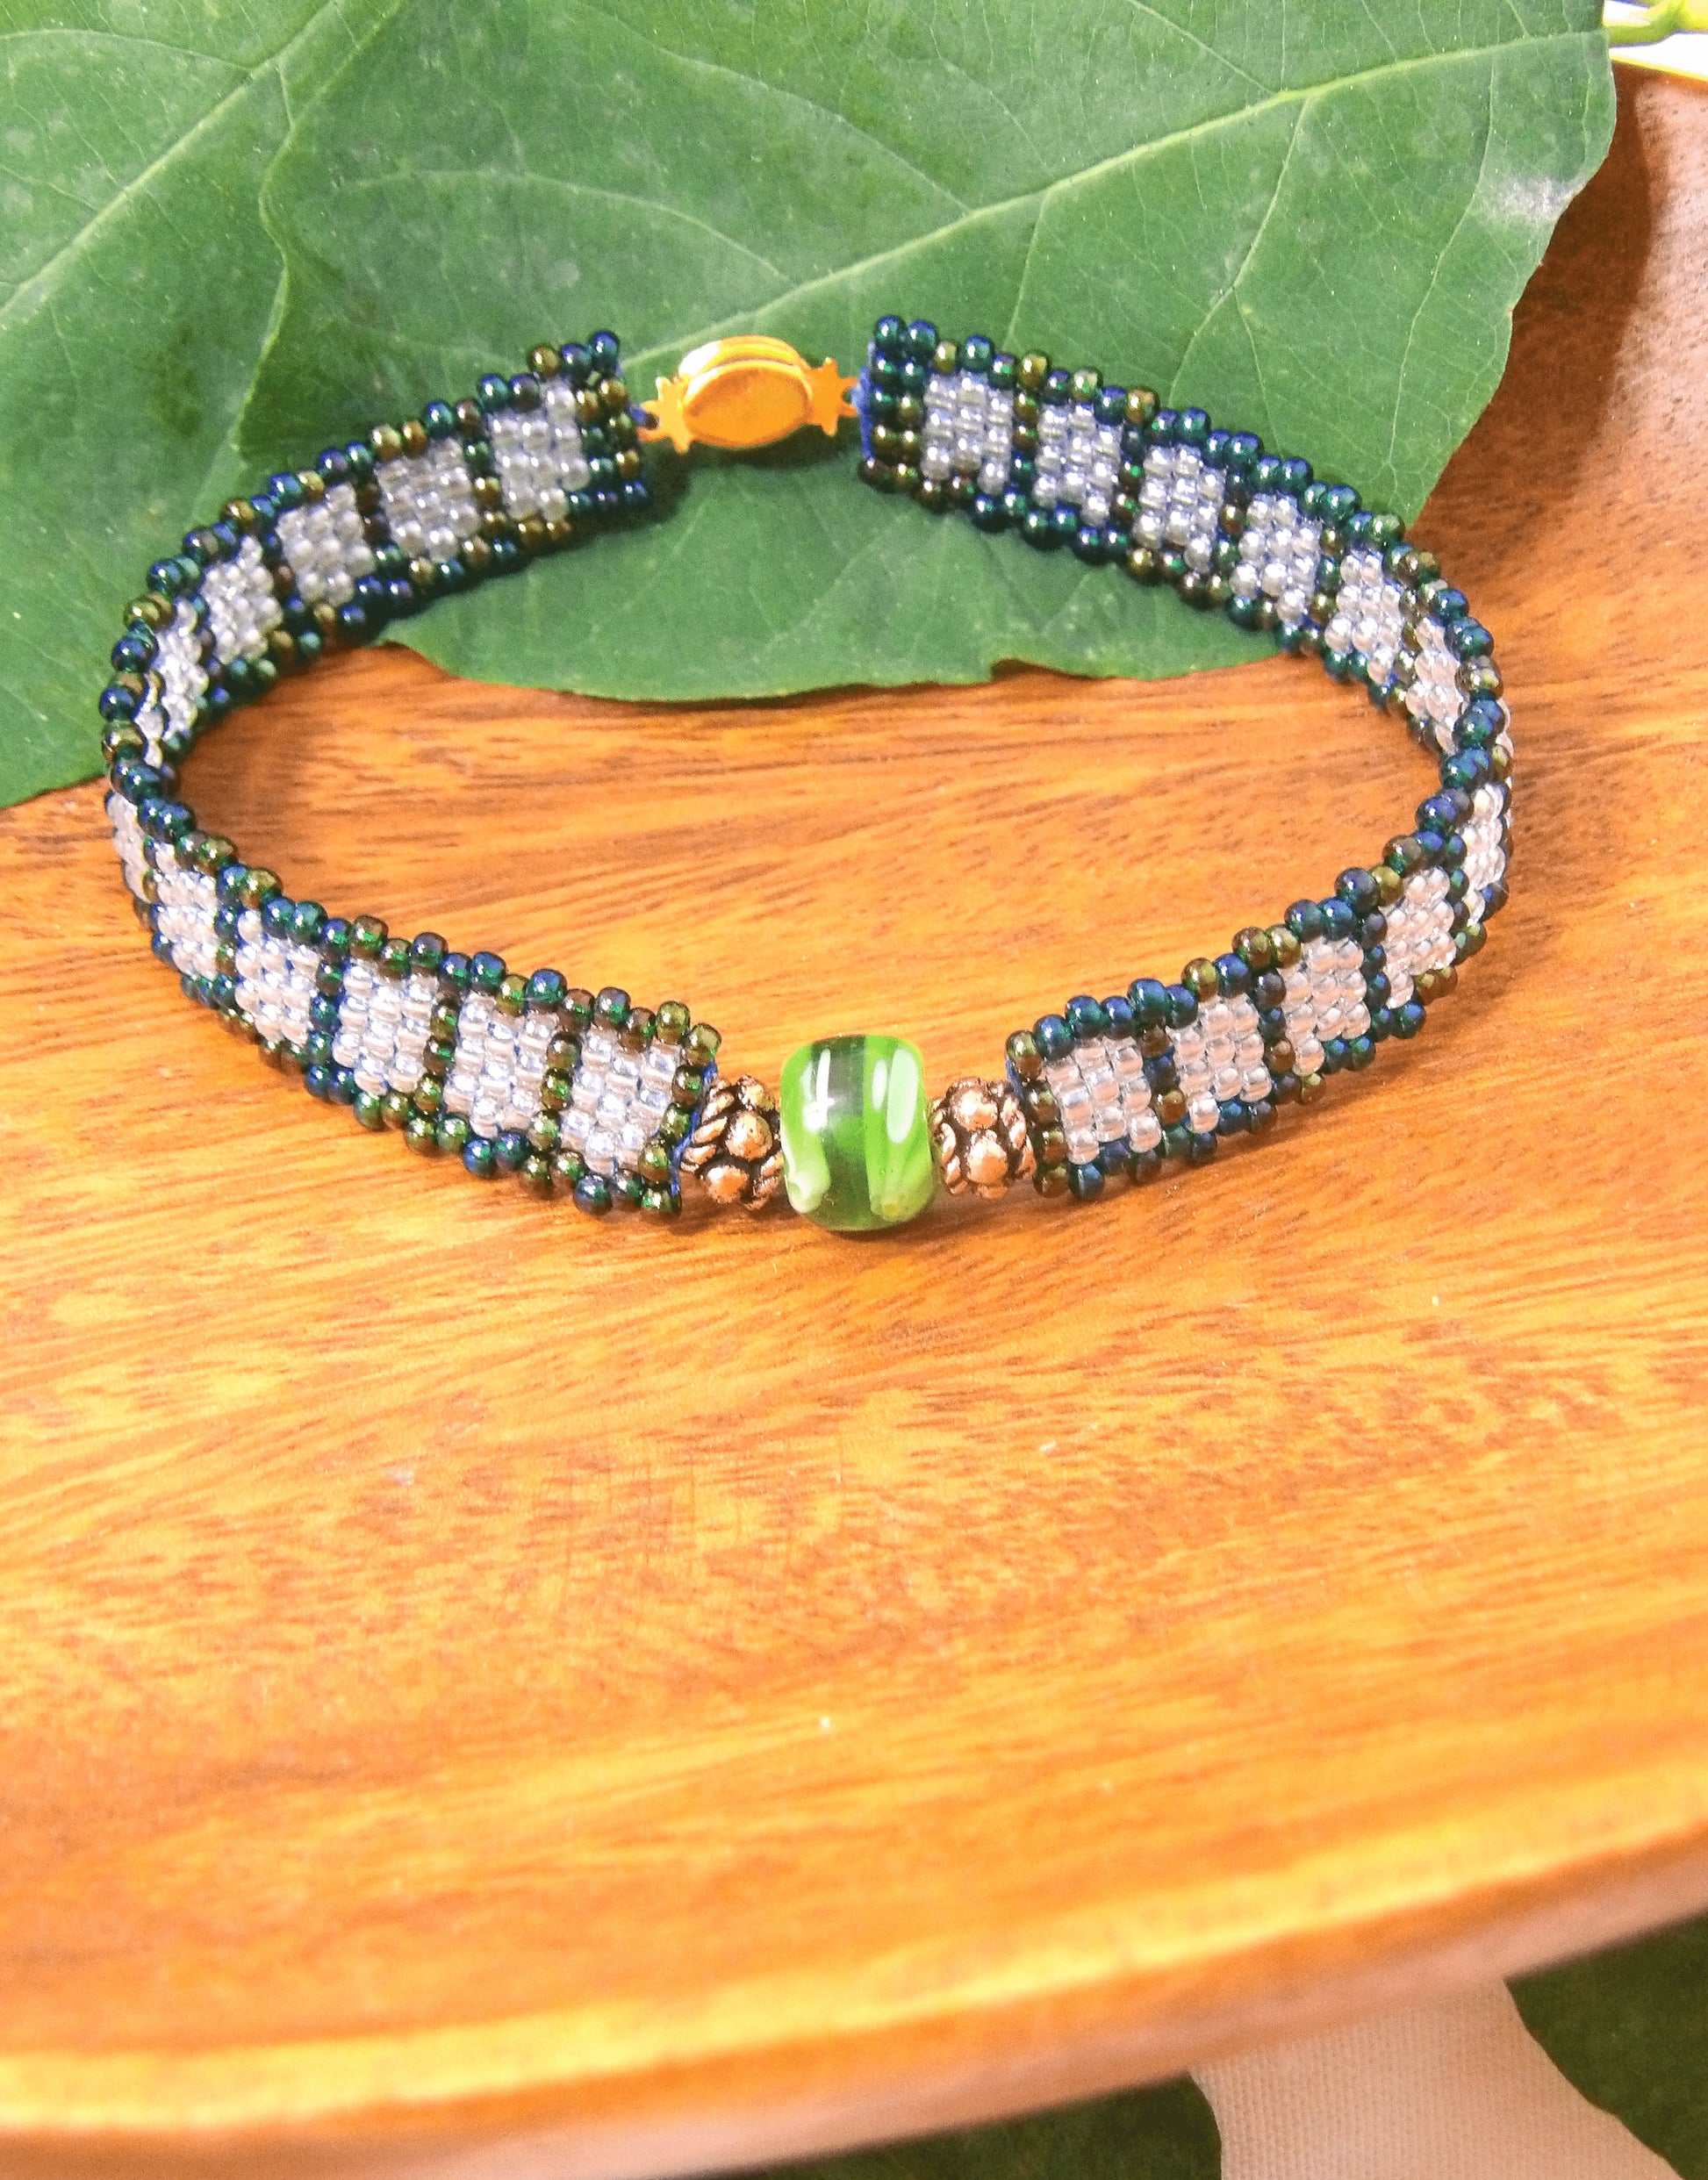 Boho Chic Beaded Bracelet | Boho Geometric Cuff Bracelet | Handmade Boho Jewelry | Woven Glass Seed Bead Bracelet | Bohemian Cuff Bracelet